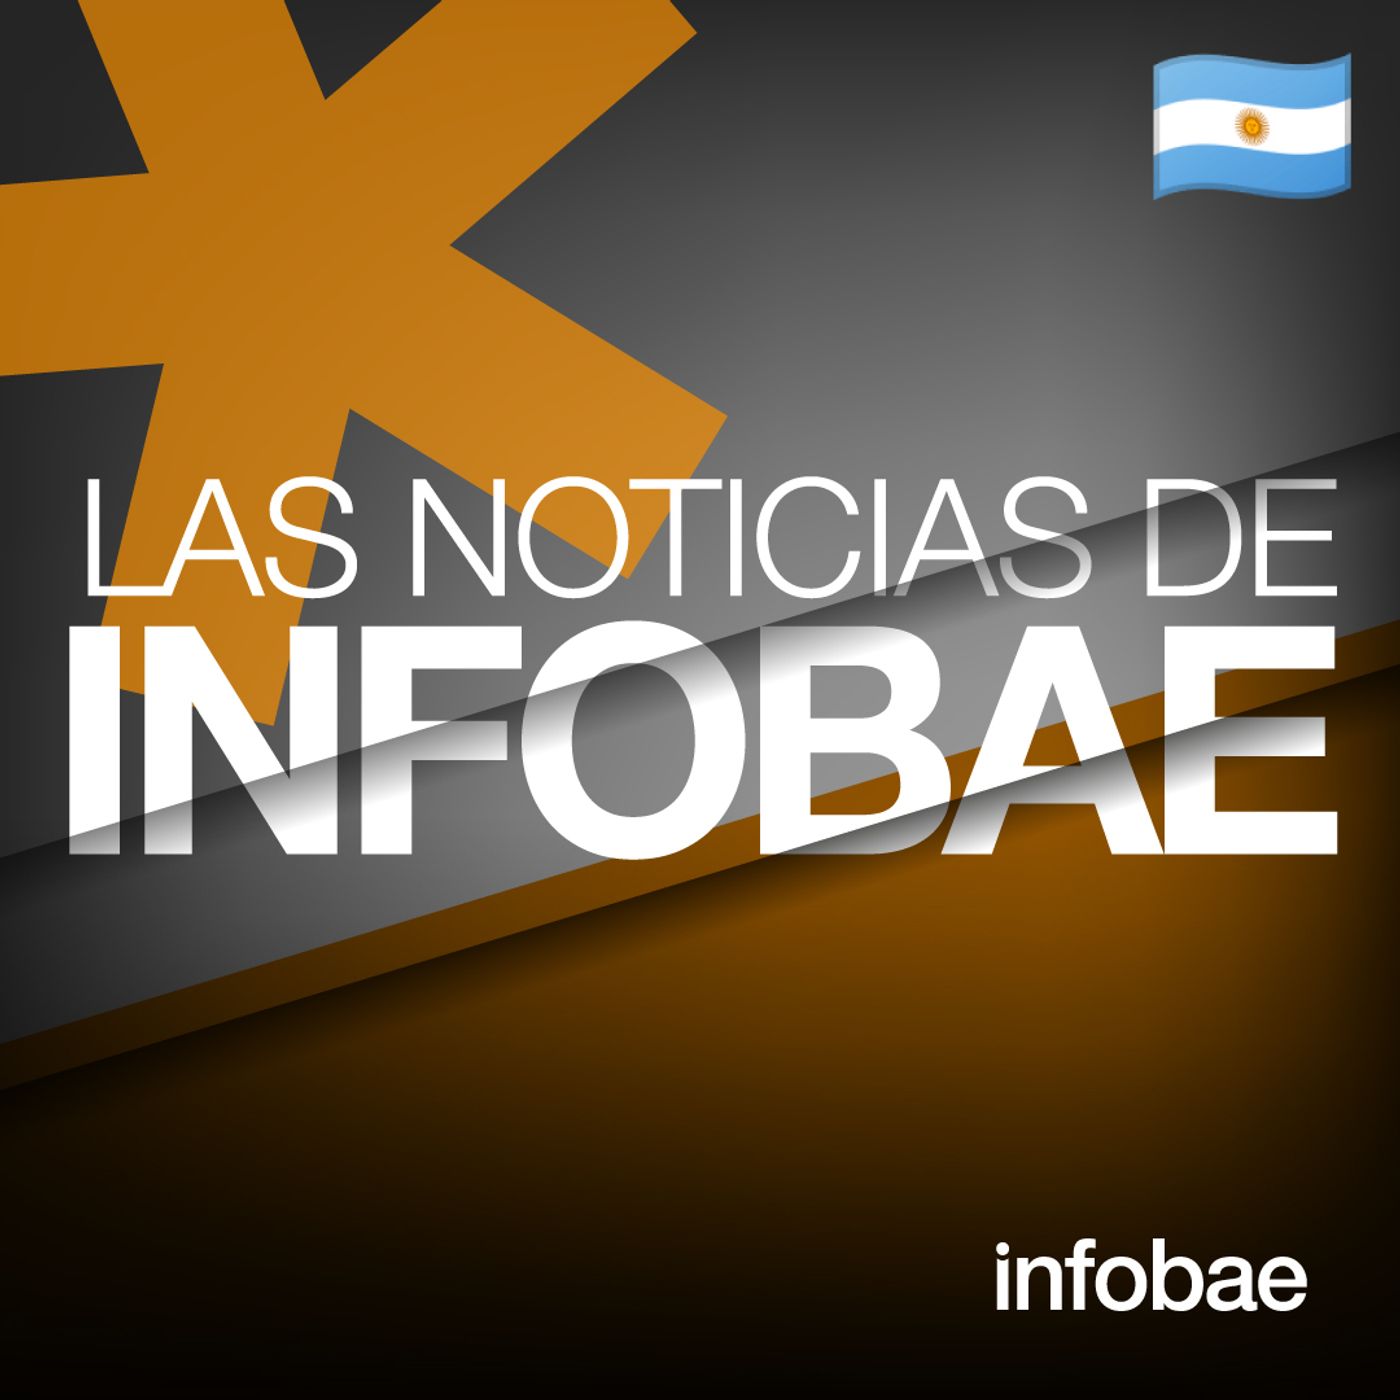 856: Las Noticias de Infobae (AR)